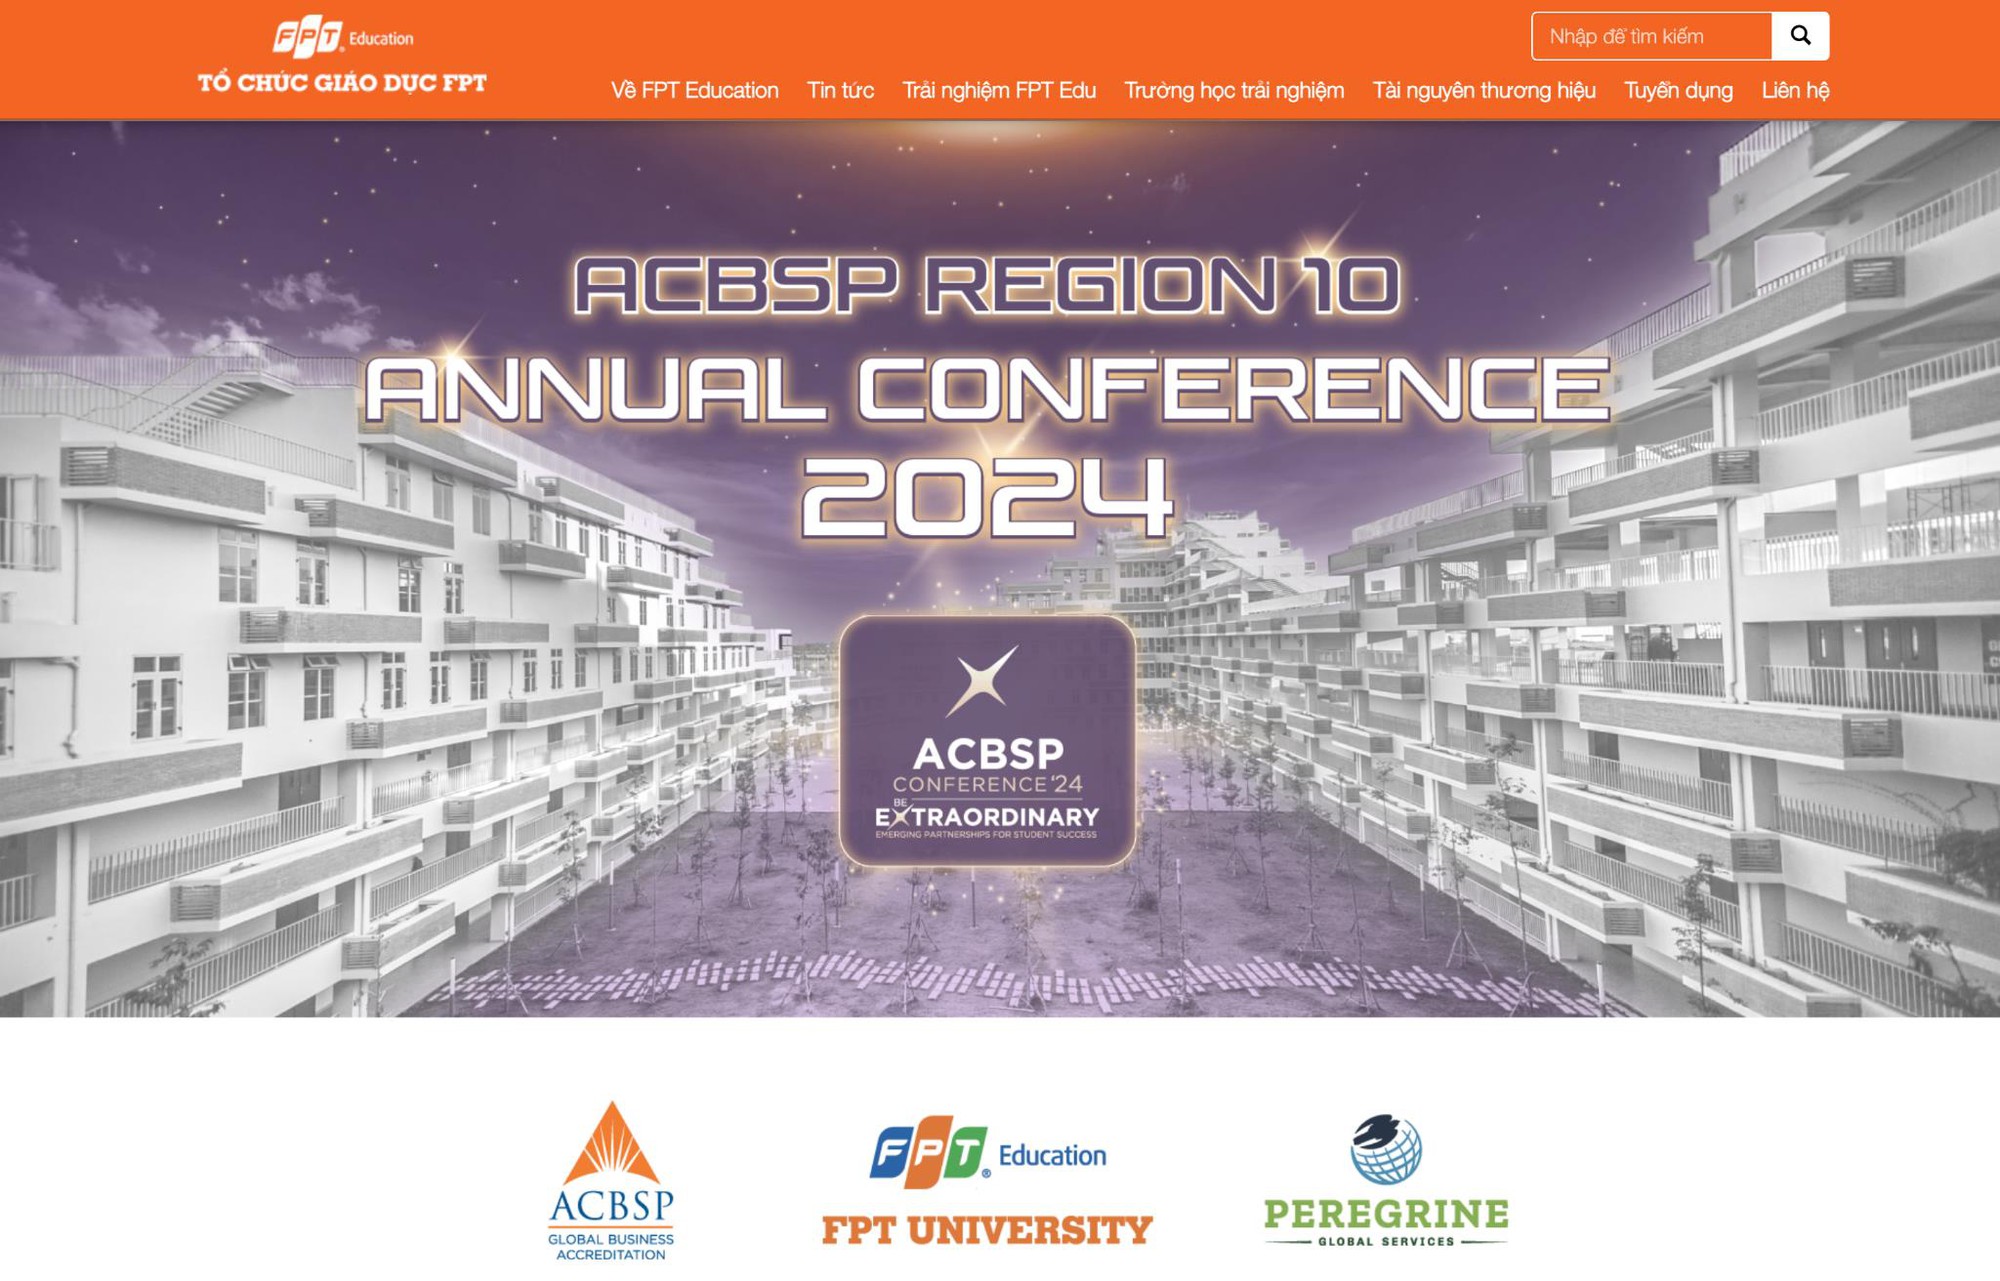 Trường ĐH FPT đăng cai tổ chức Hội nghị Hội đồng kiểm định quốc tế ACBSP